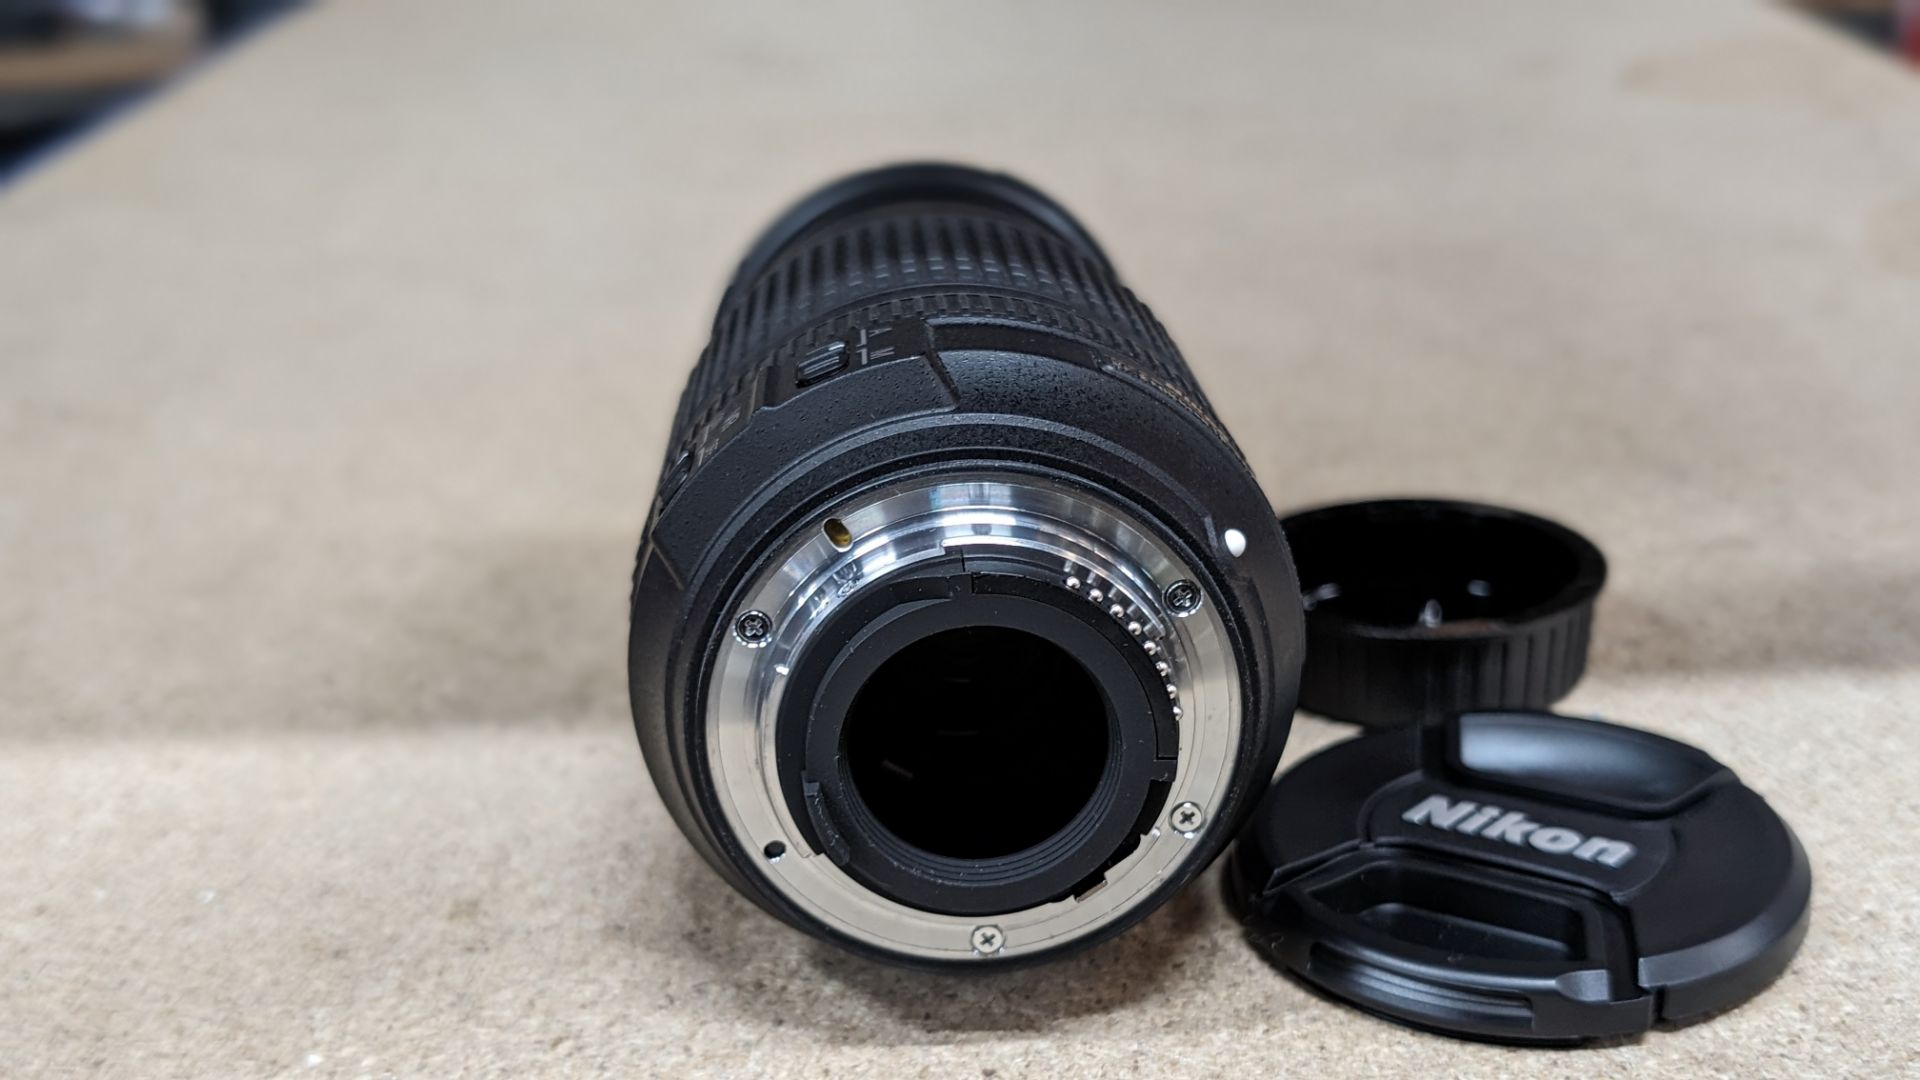 Nikon Nikkor lens AF-S DX Nikkor 18-140mm 1:3.5-5.6G ED VR - Image 5 of 13